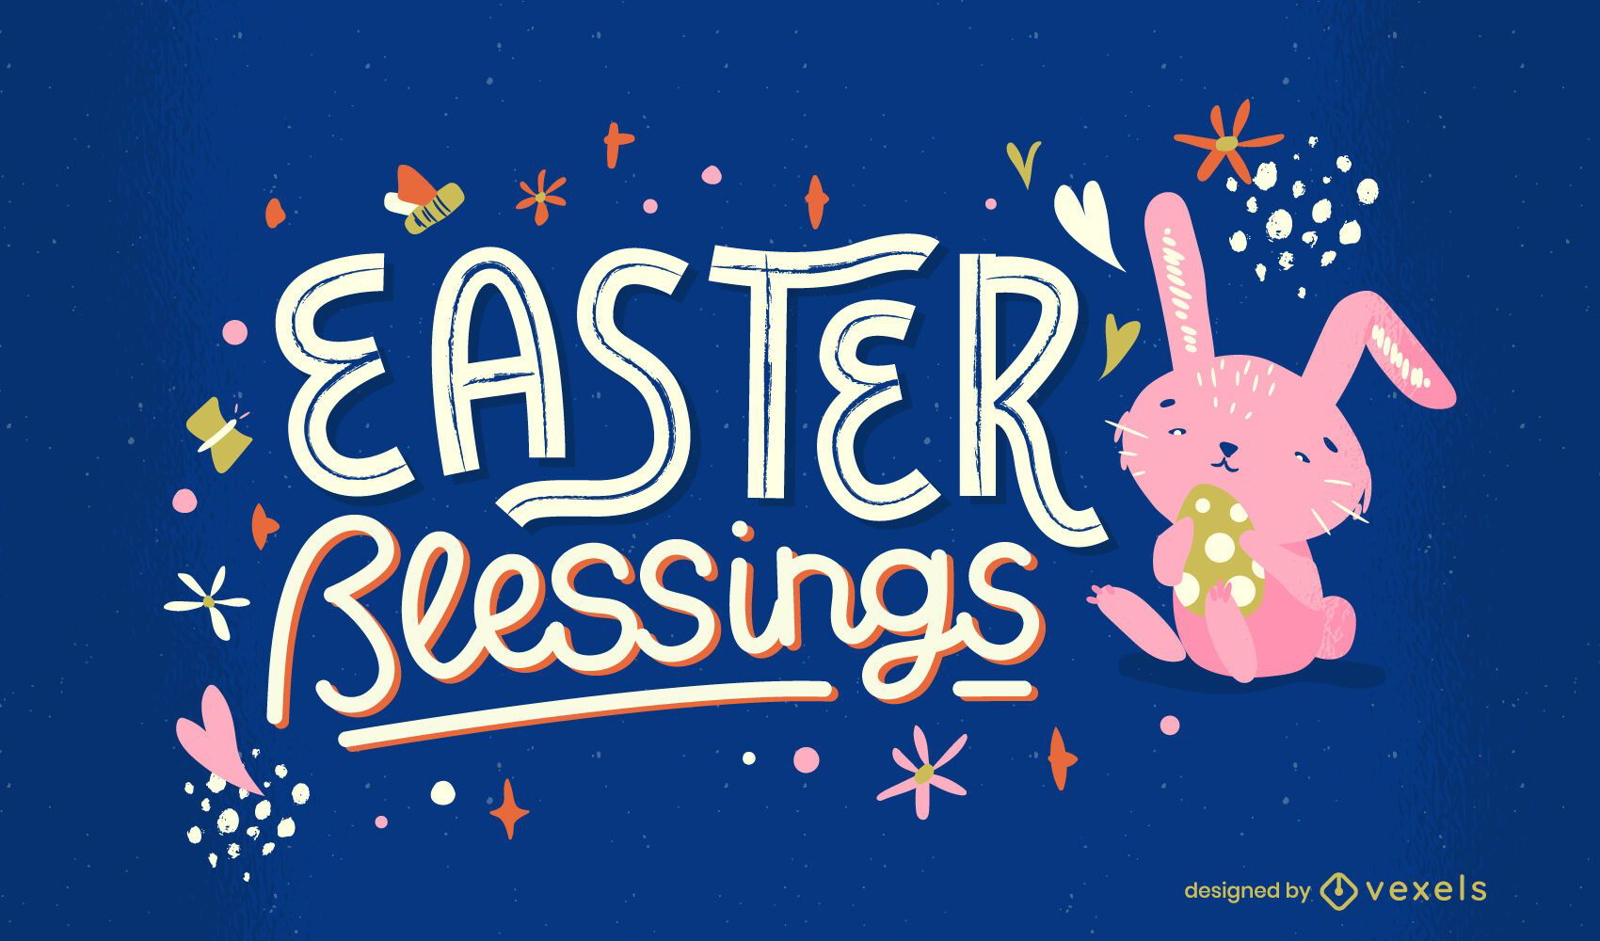 Easter blessing lettering